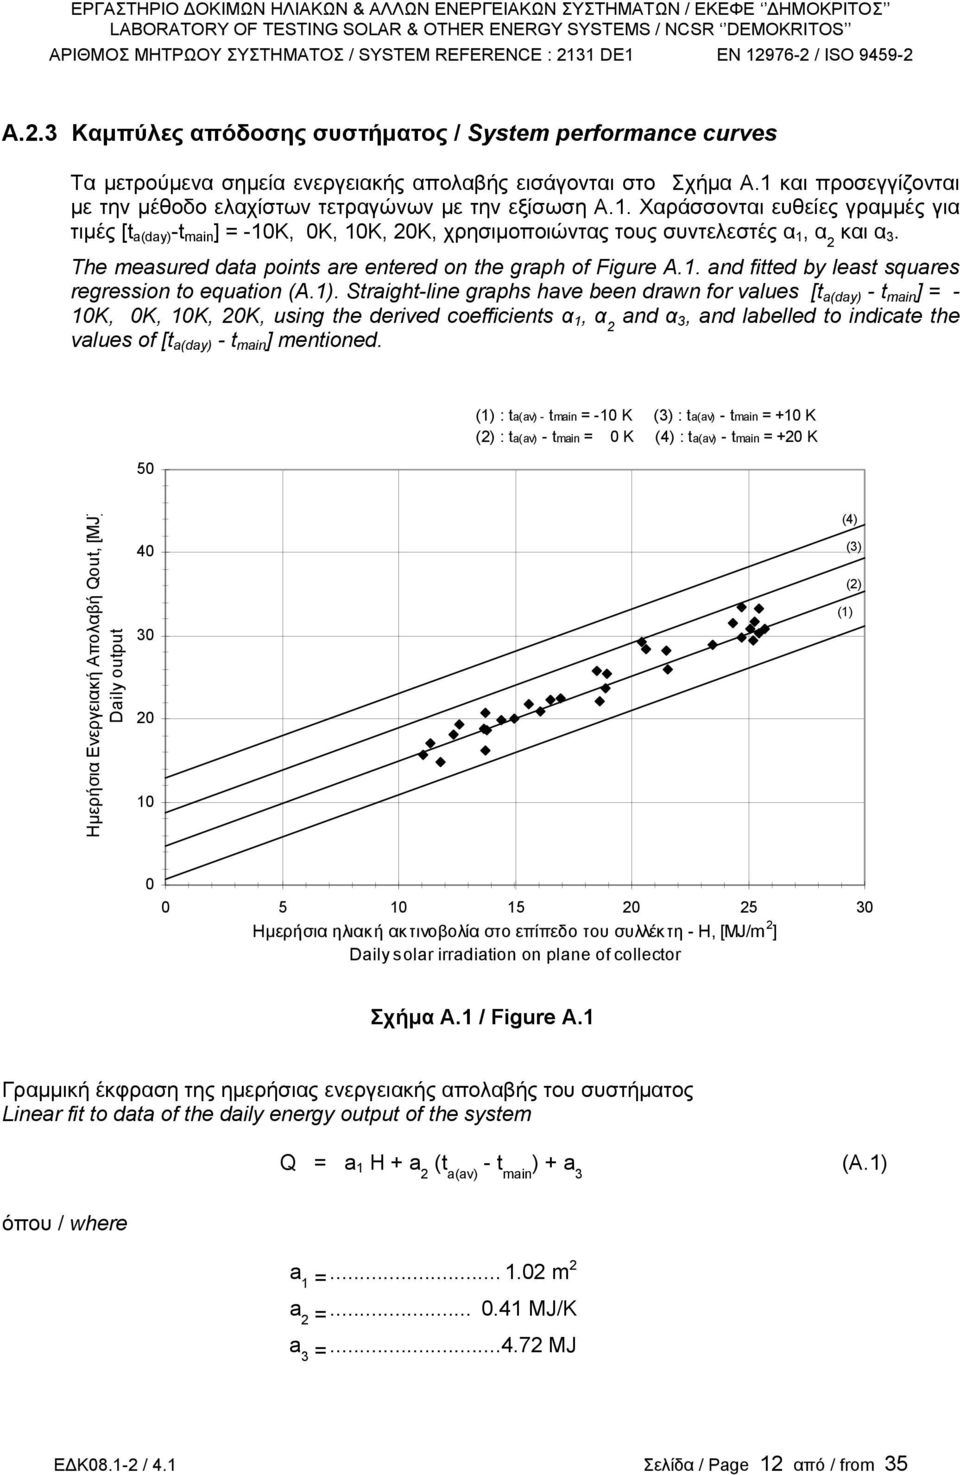 Τhe measured data points are entered on the graph of Figure A.1. and fitted by least squares regression to equation (A.1).